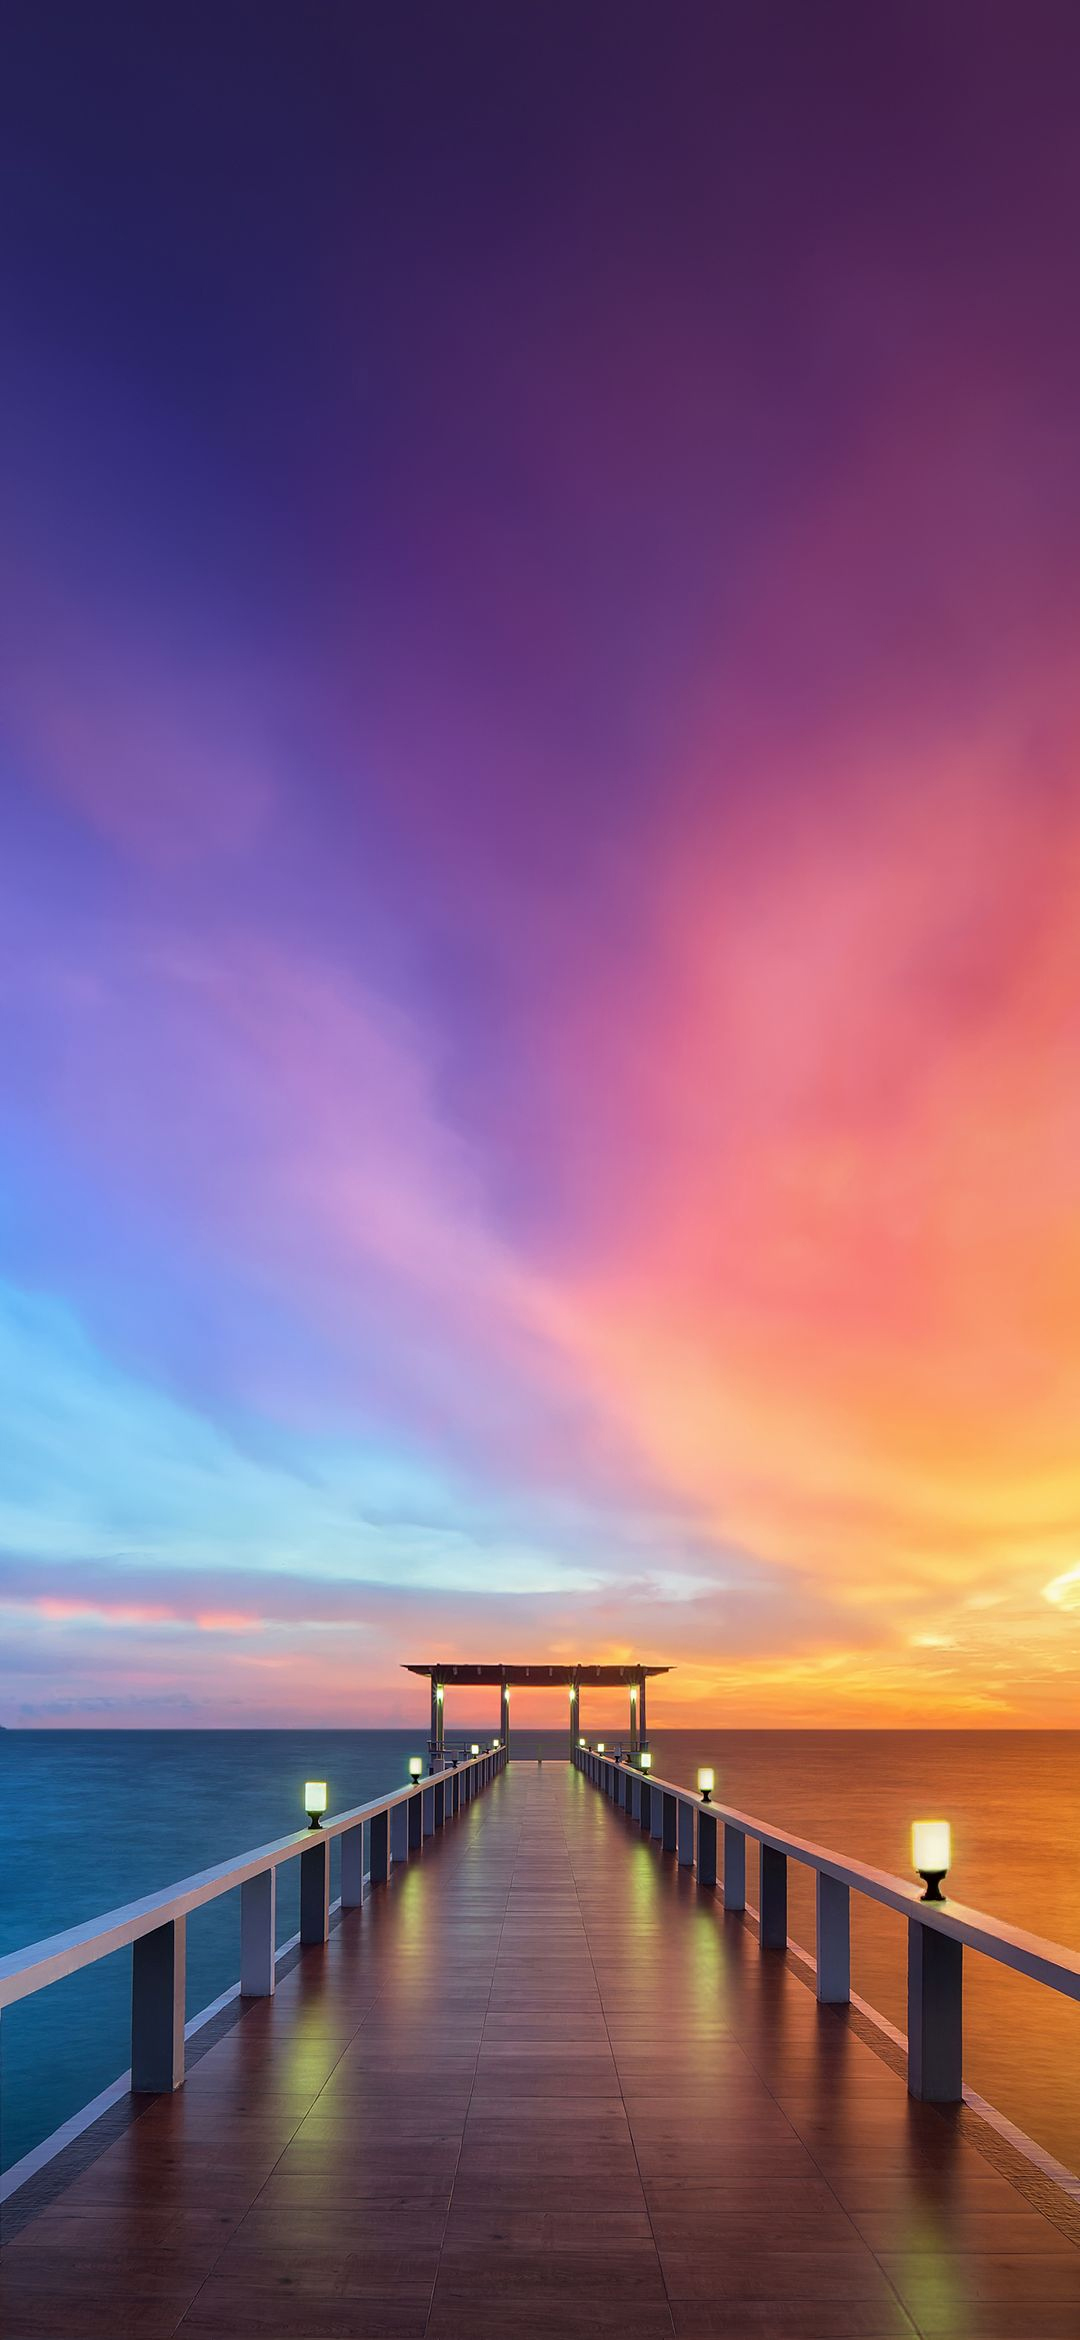 美しい桟橋と紫の空 Find X Android 壁紙 待ち受け Sumaran